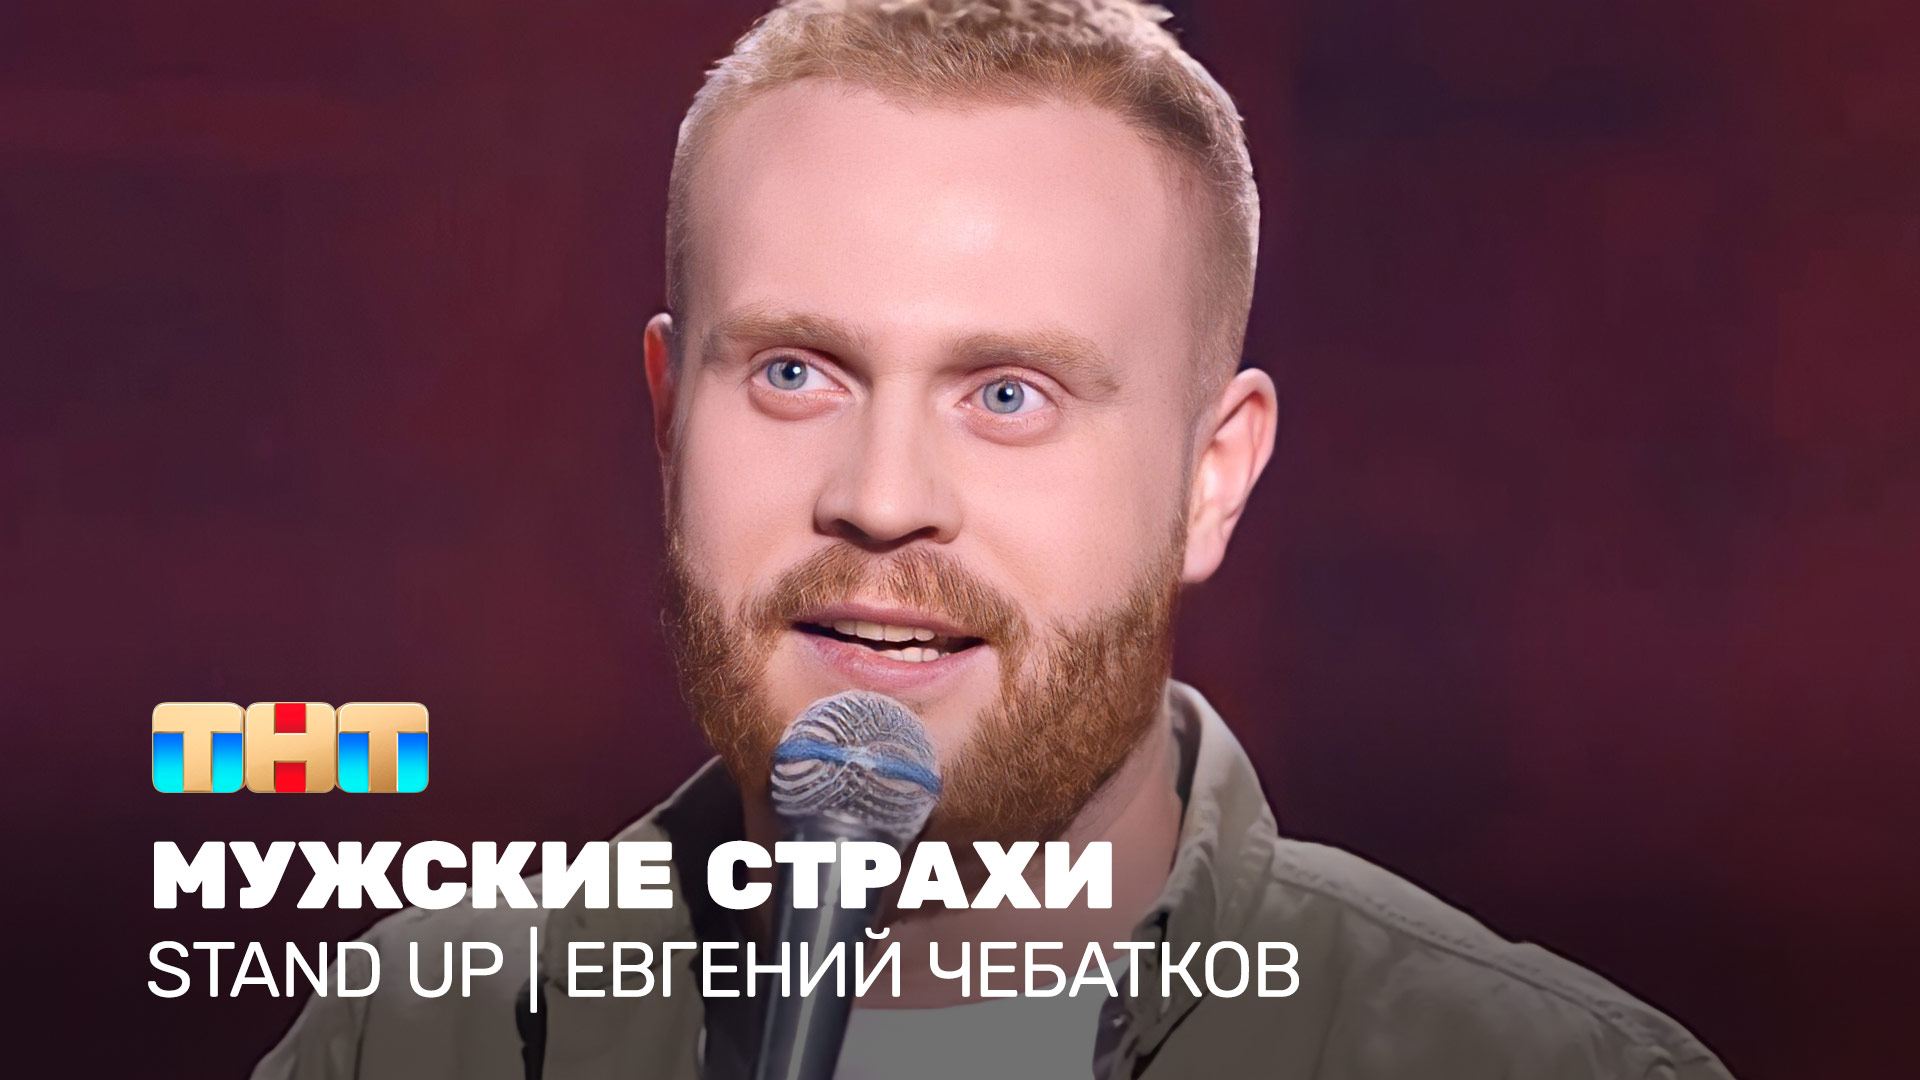 Stand Up:  Евгений Чебатков - мужские страхи